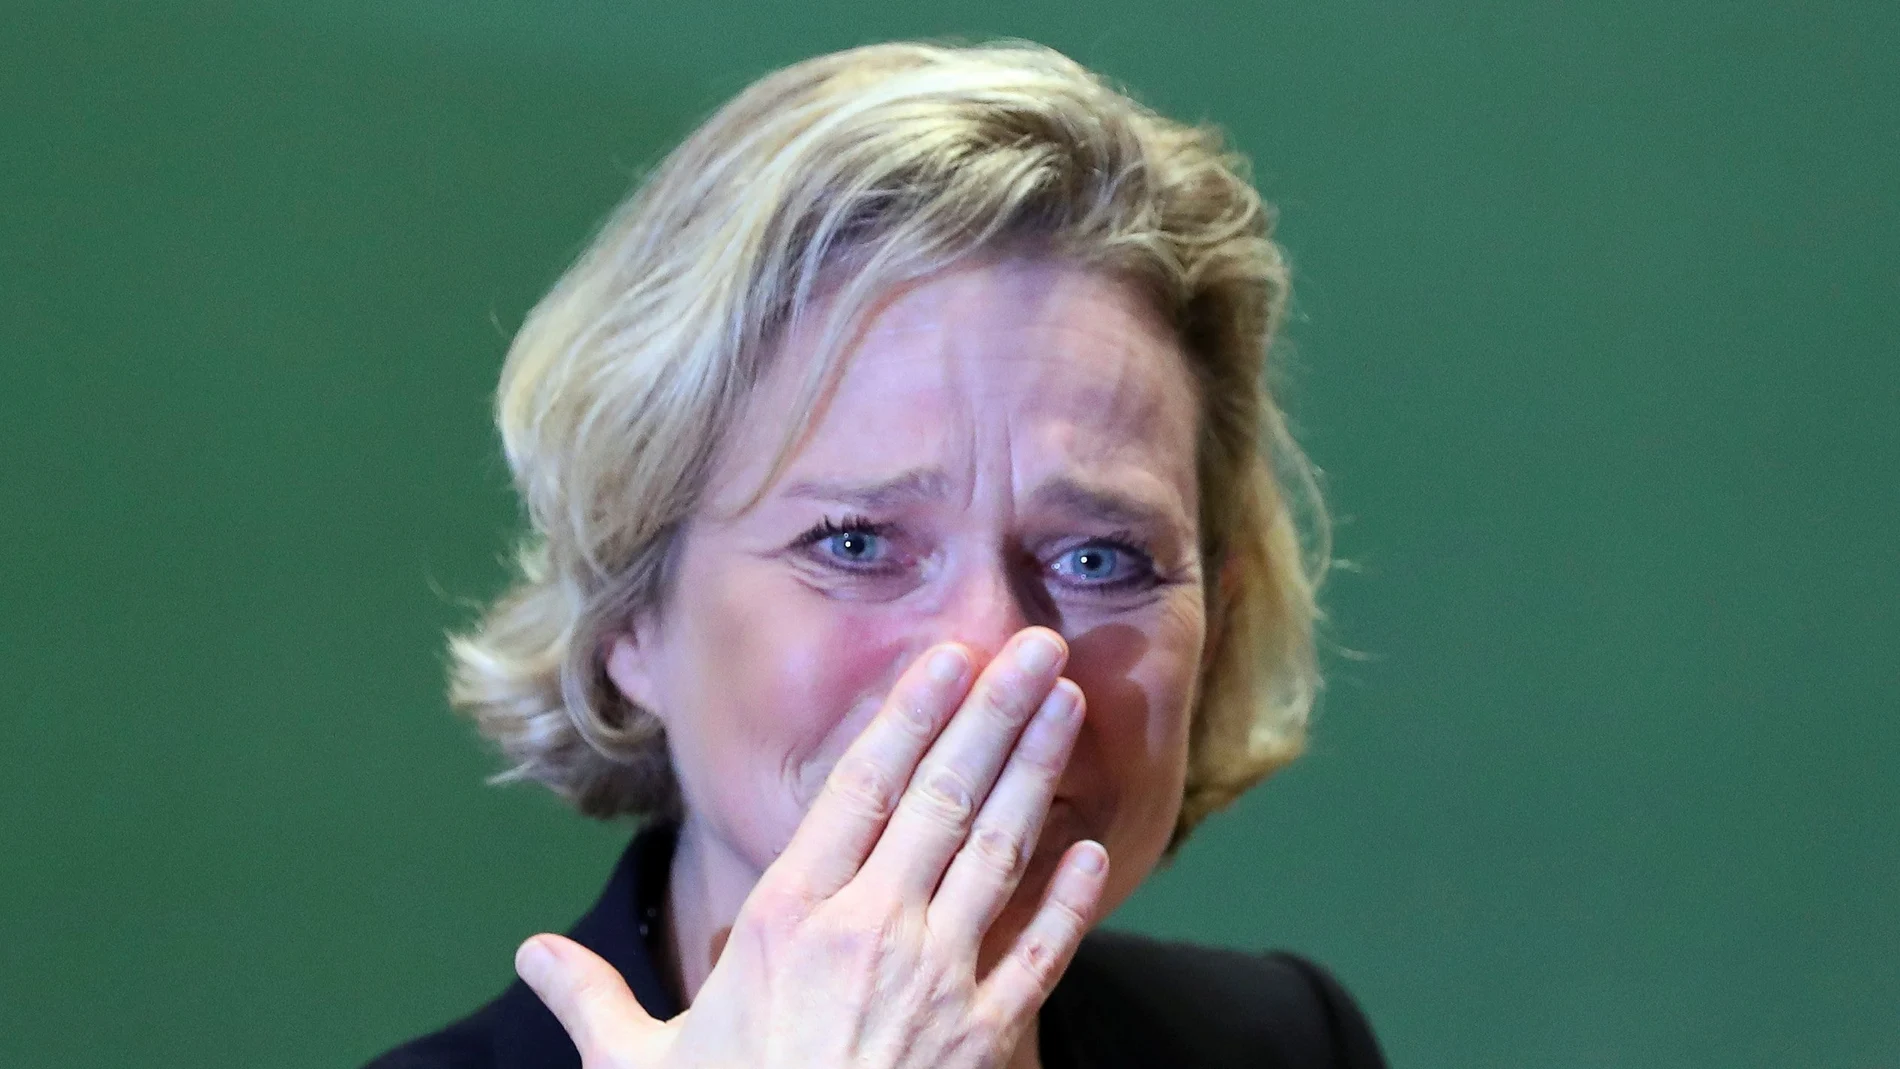 La artista belga Delphine Böel rompe a llorar tras pronunciar sus primeras palabras como princesa. REUTERS/Yves Herman